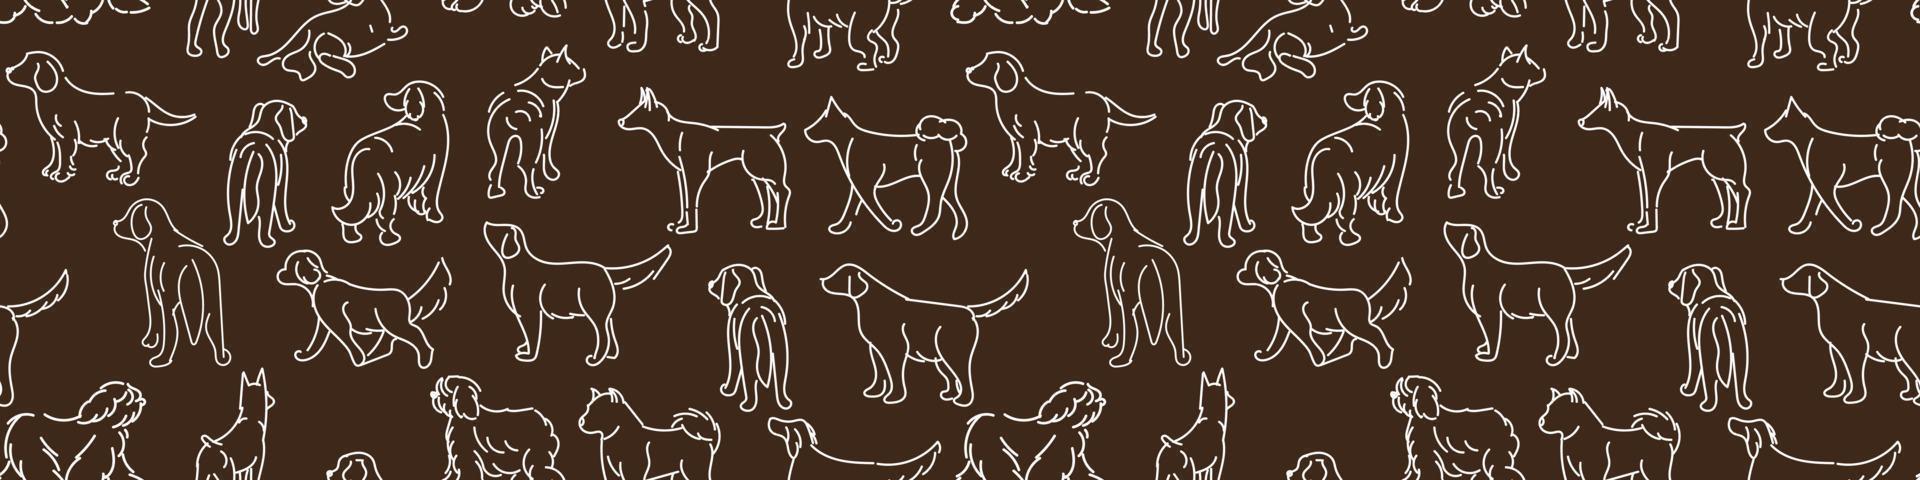 patrón de dibujo negro con perros en diferentes poses. gráficos de líneas sobre un fondo oscuro. líneas claras en la oscuridad. adecuado para la impresión en papel y textiles. envoltura de regalos, ropa. vector